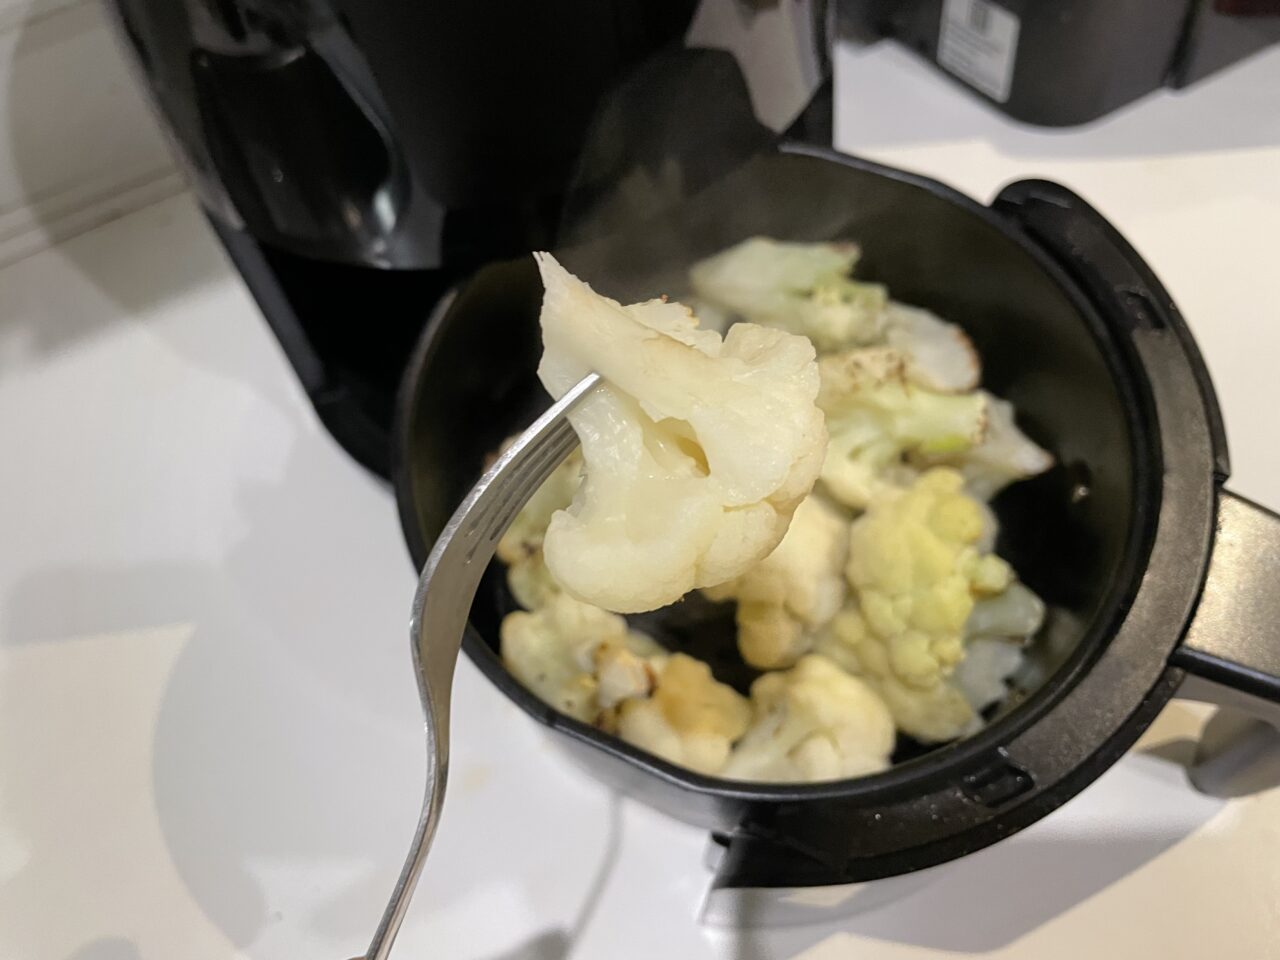 Kawałek gotowanego kalafiora na widelcu nad czarnym garnkiem z resztą warzyw.